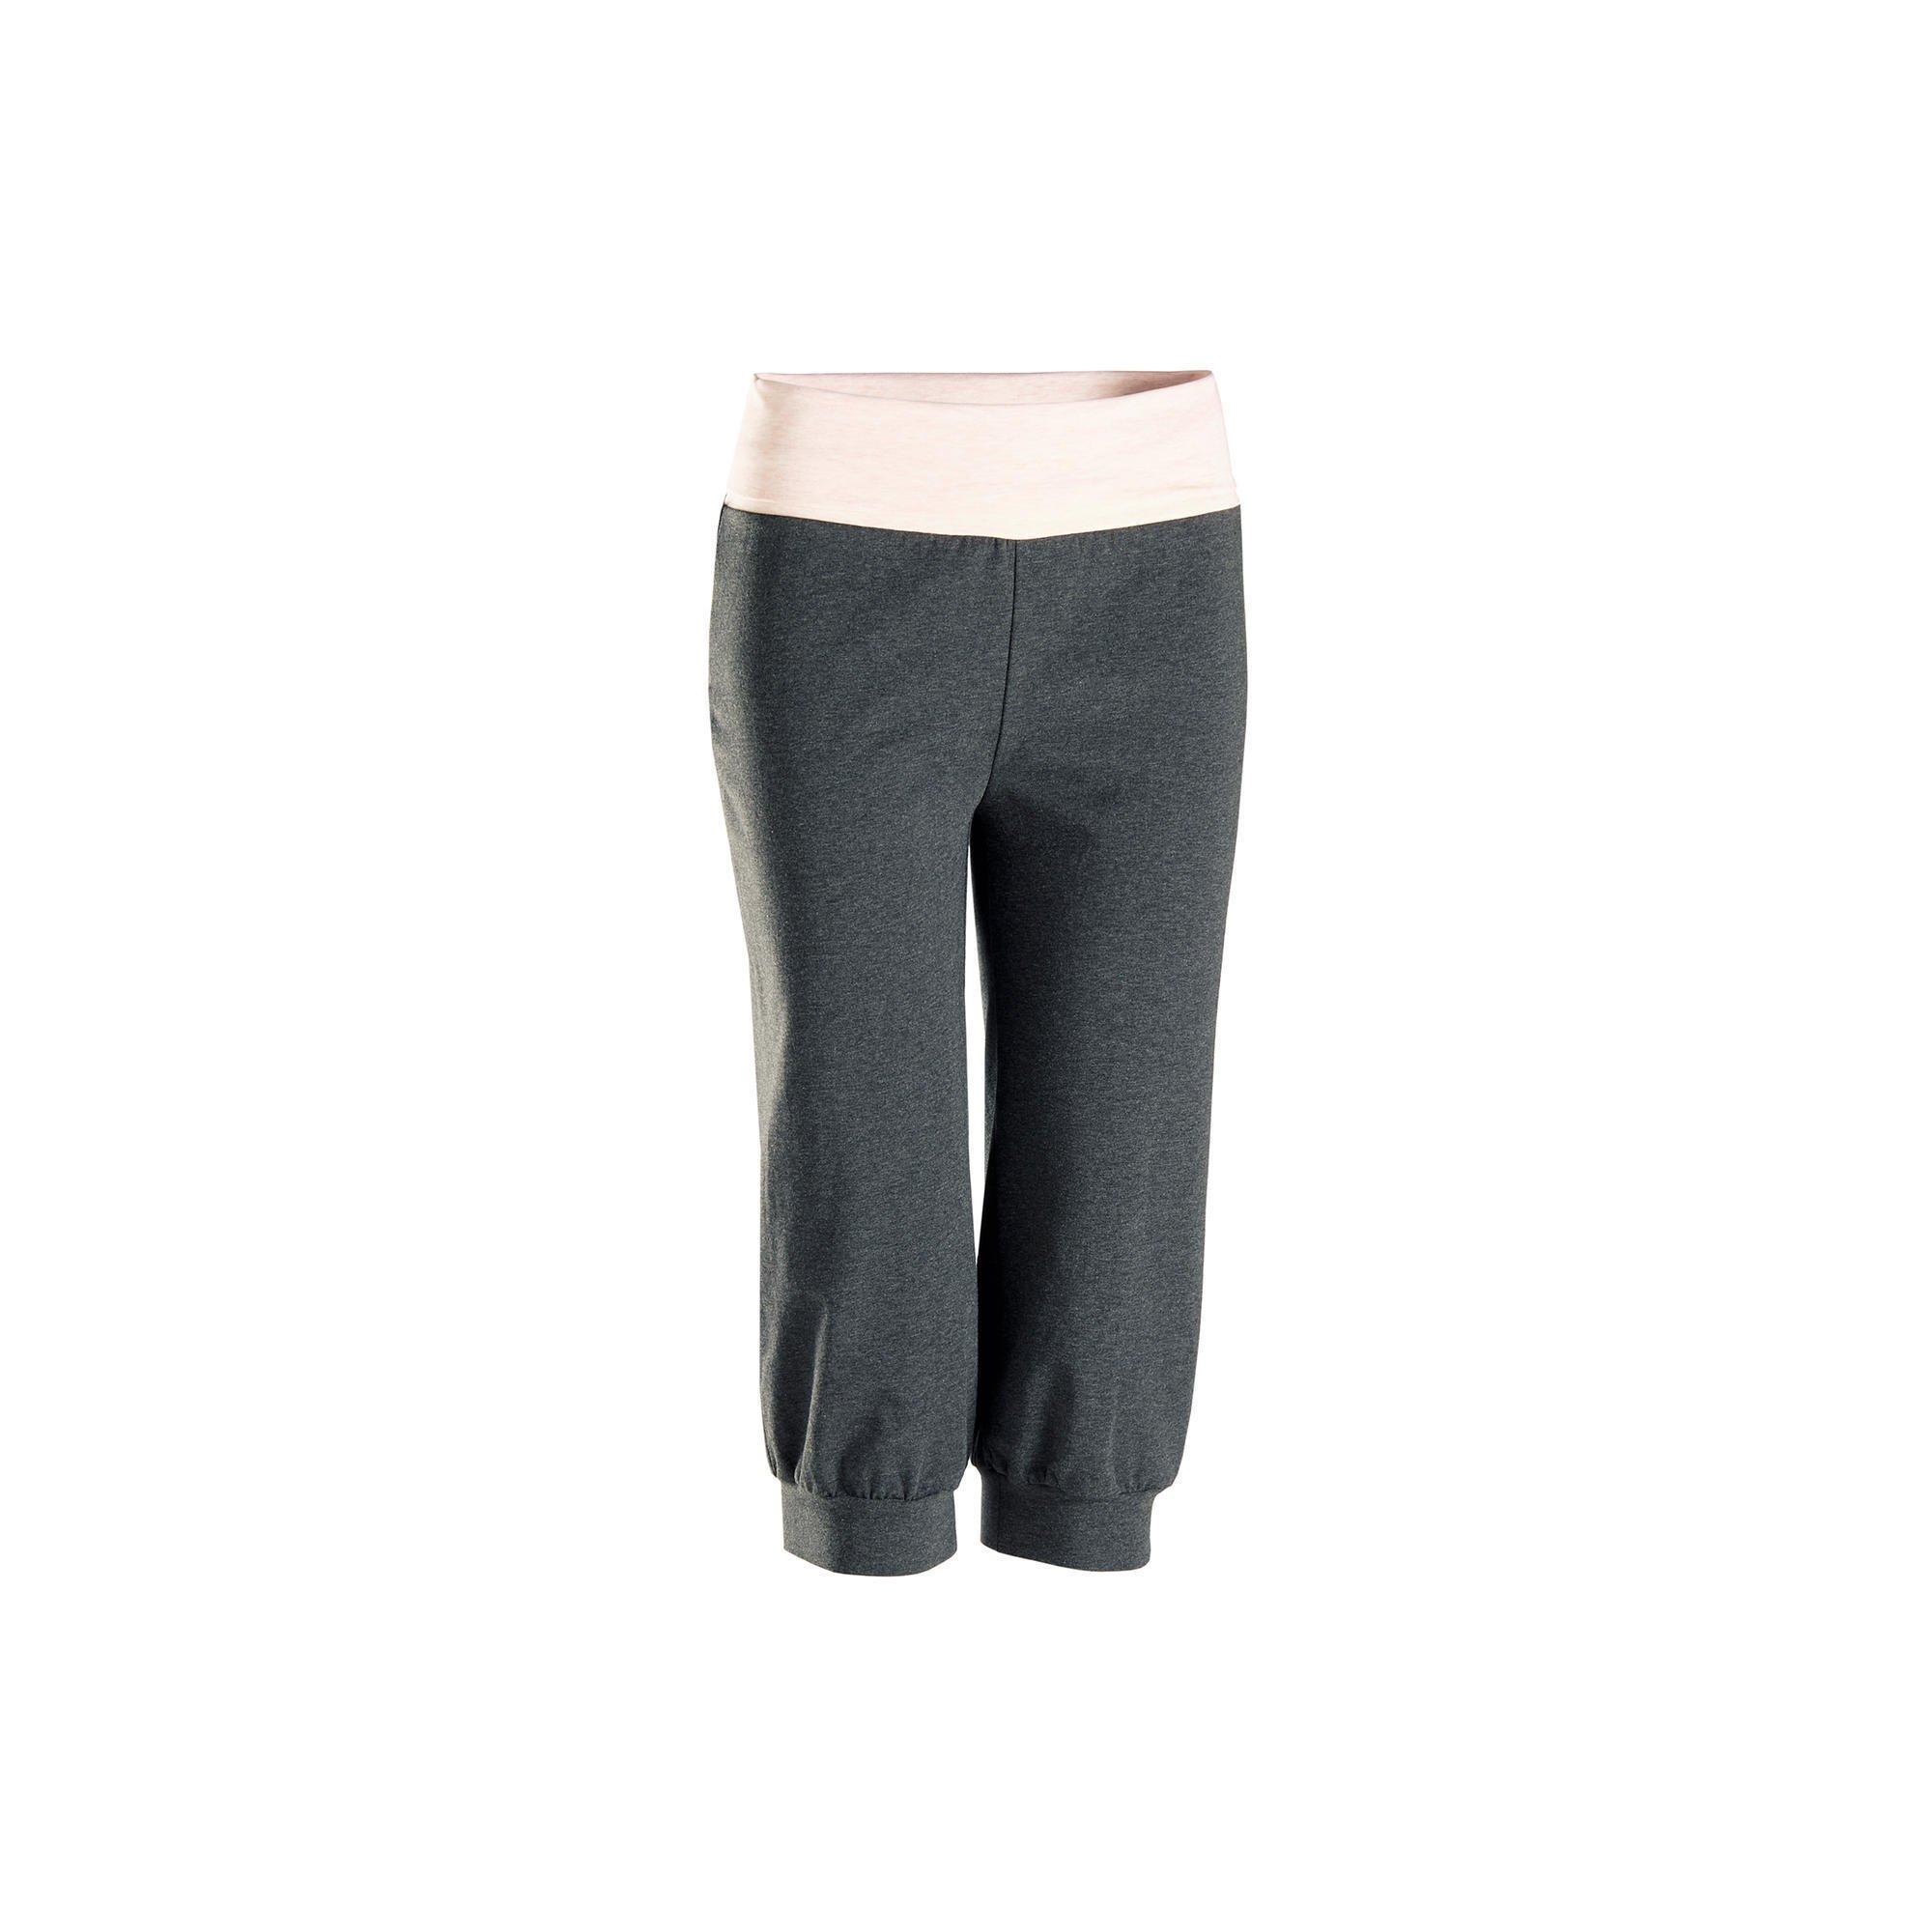 Image of KIMJALY 3/4-Hose sanftes Yoga Damen Ecodesign grau/rosa - S